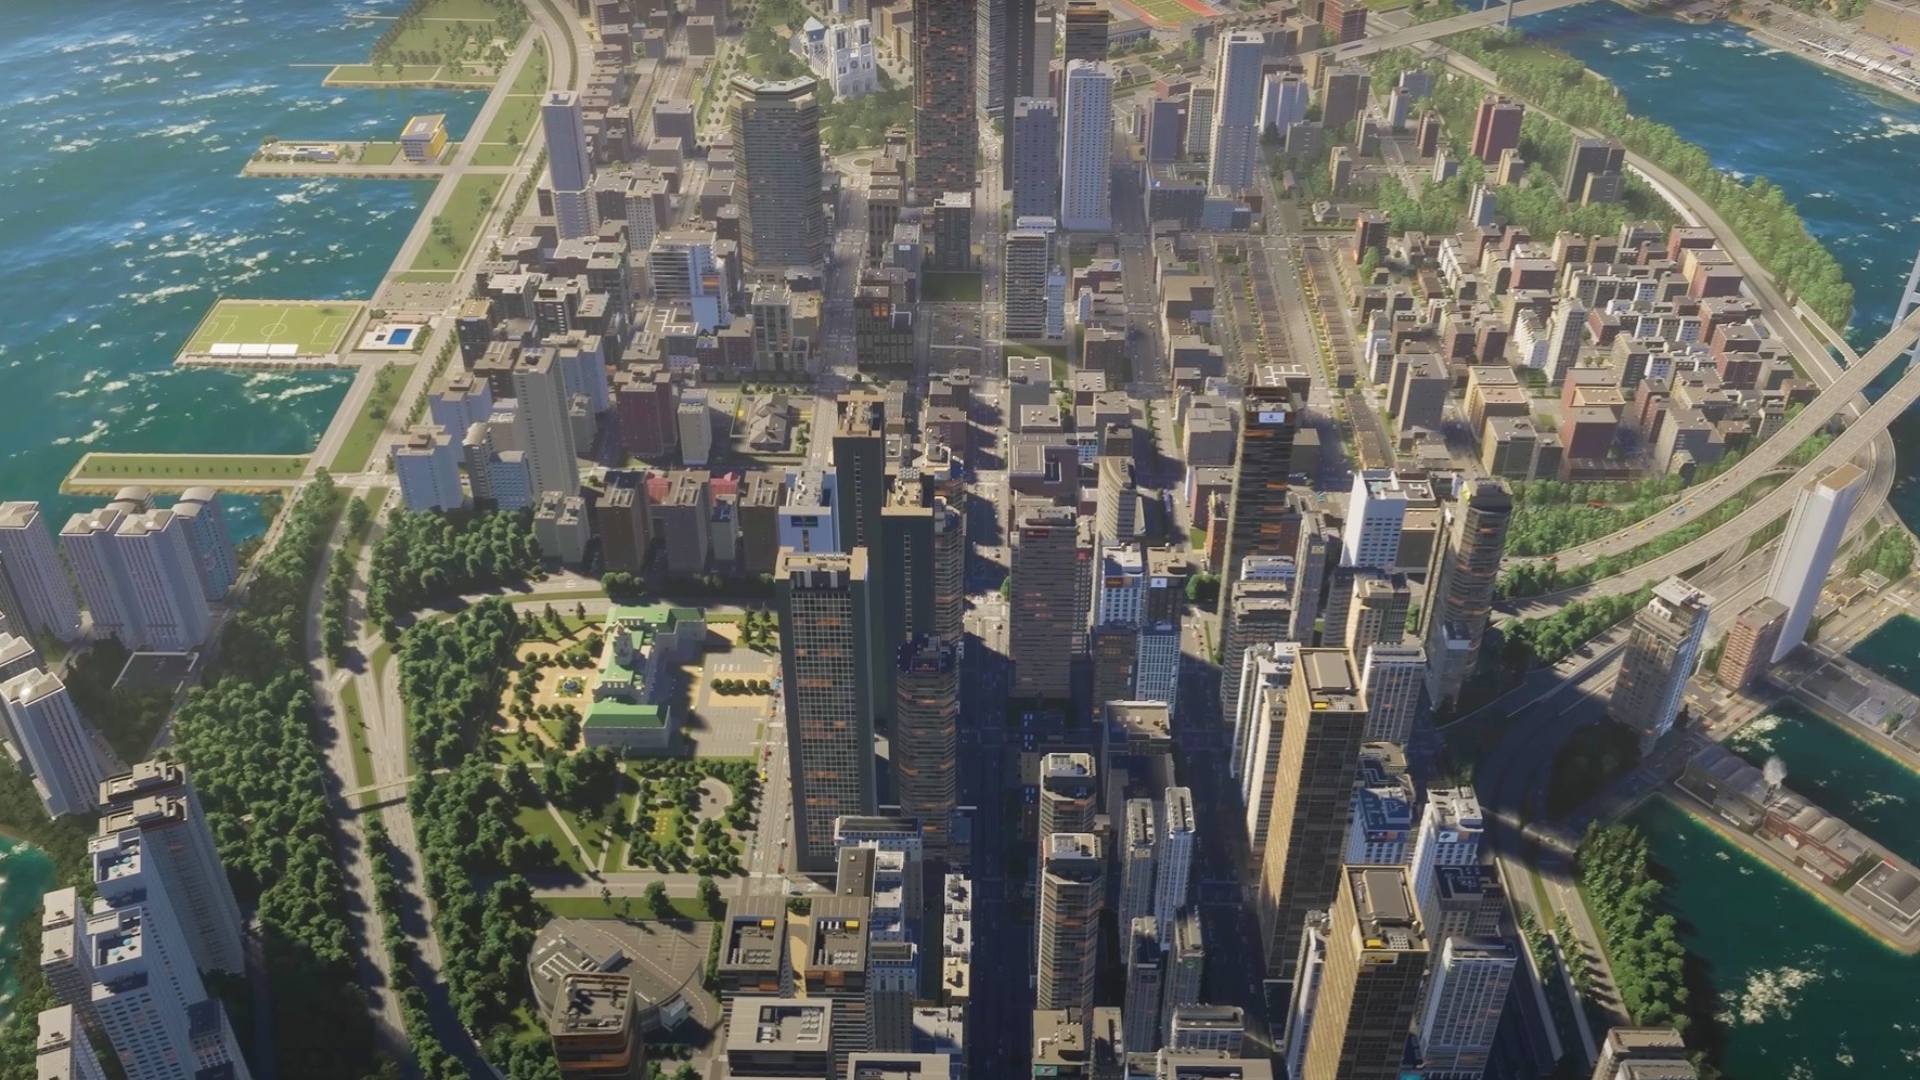 Cities: Skylines II è ora disponibile su PC